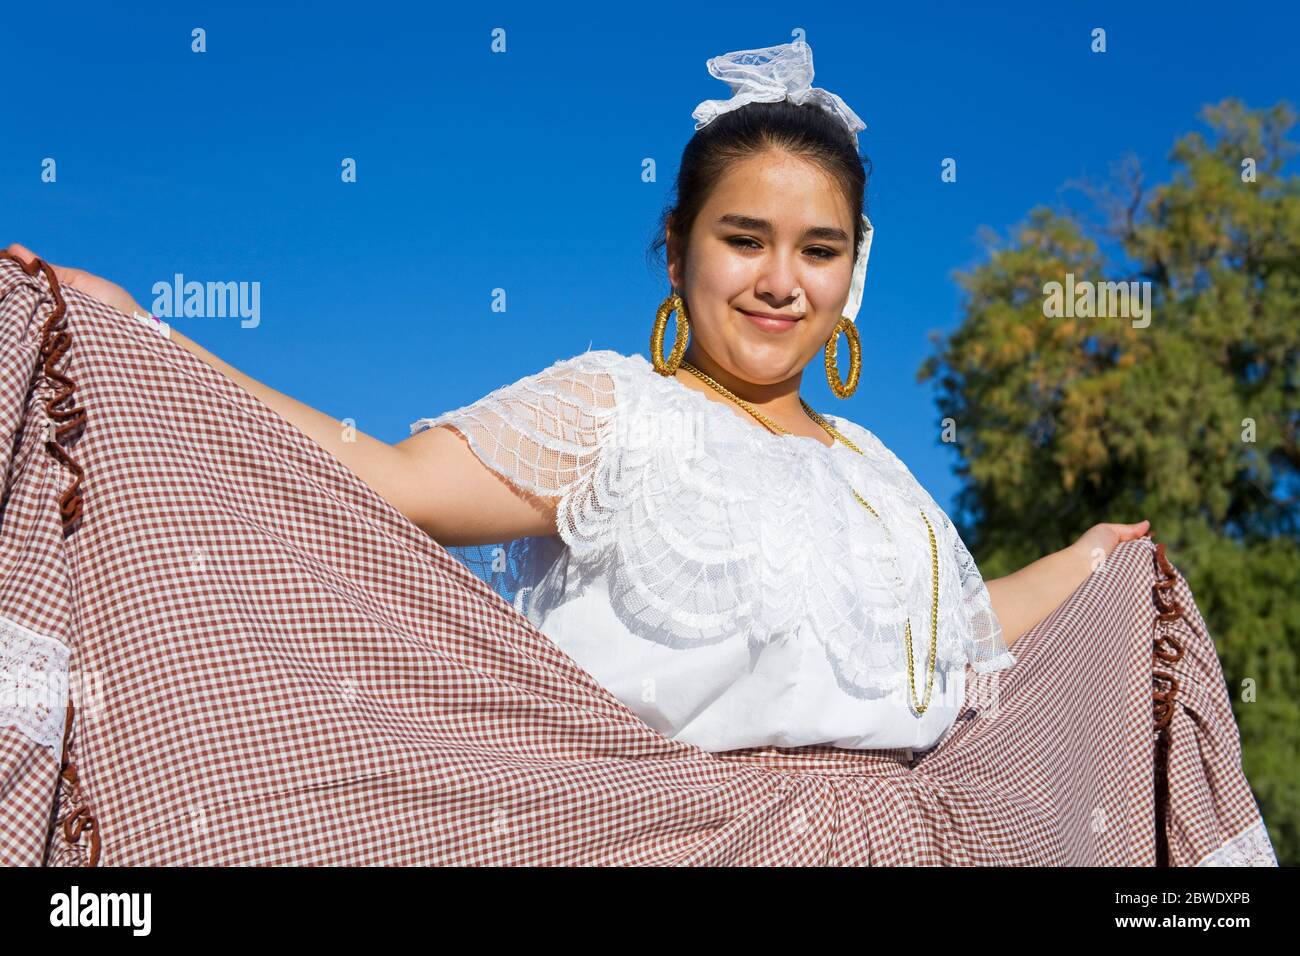 Ballerino di danza folcloristica, Tucson Rodeo Parade, Tucson, Arizona, Stati Uniti d'America Foto Stock